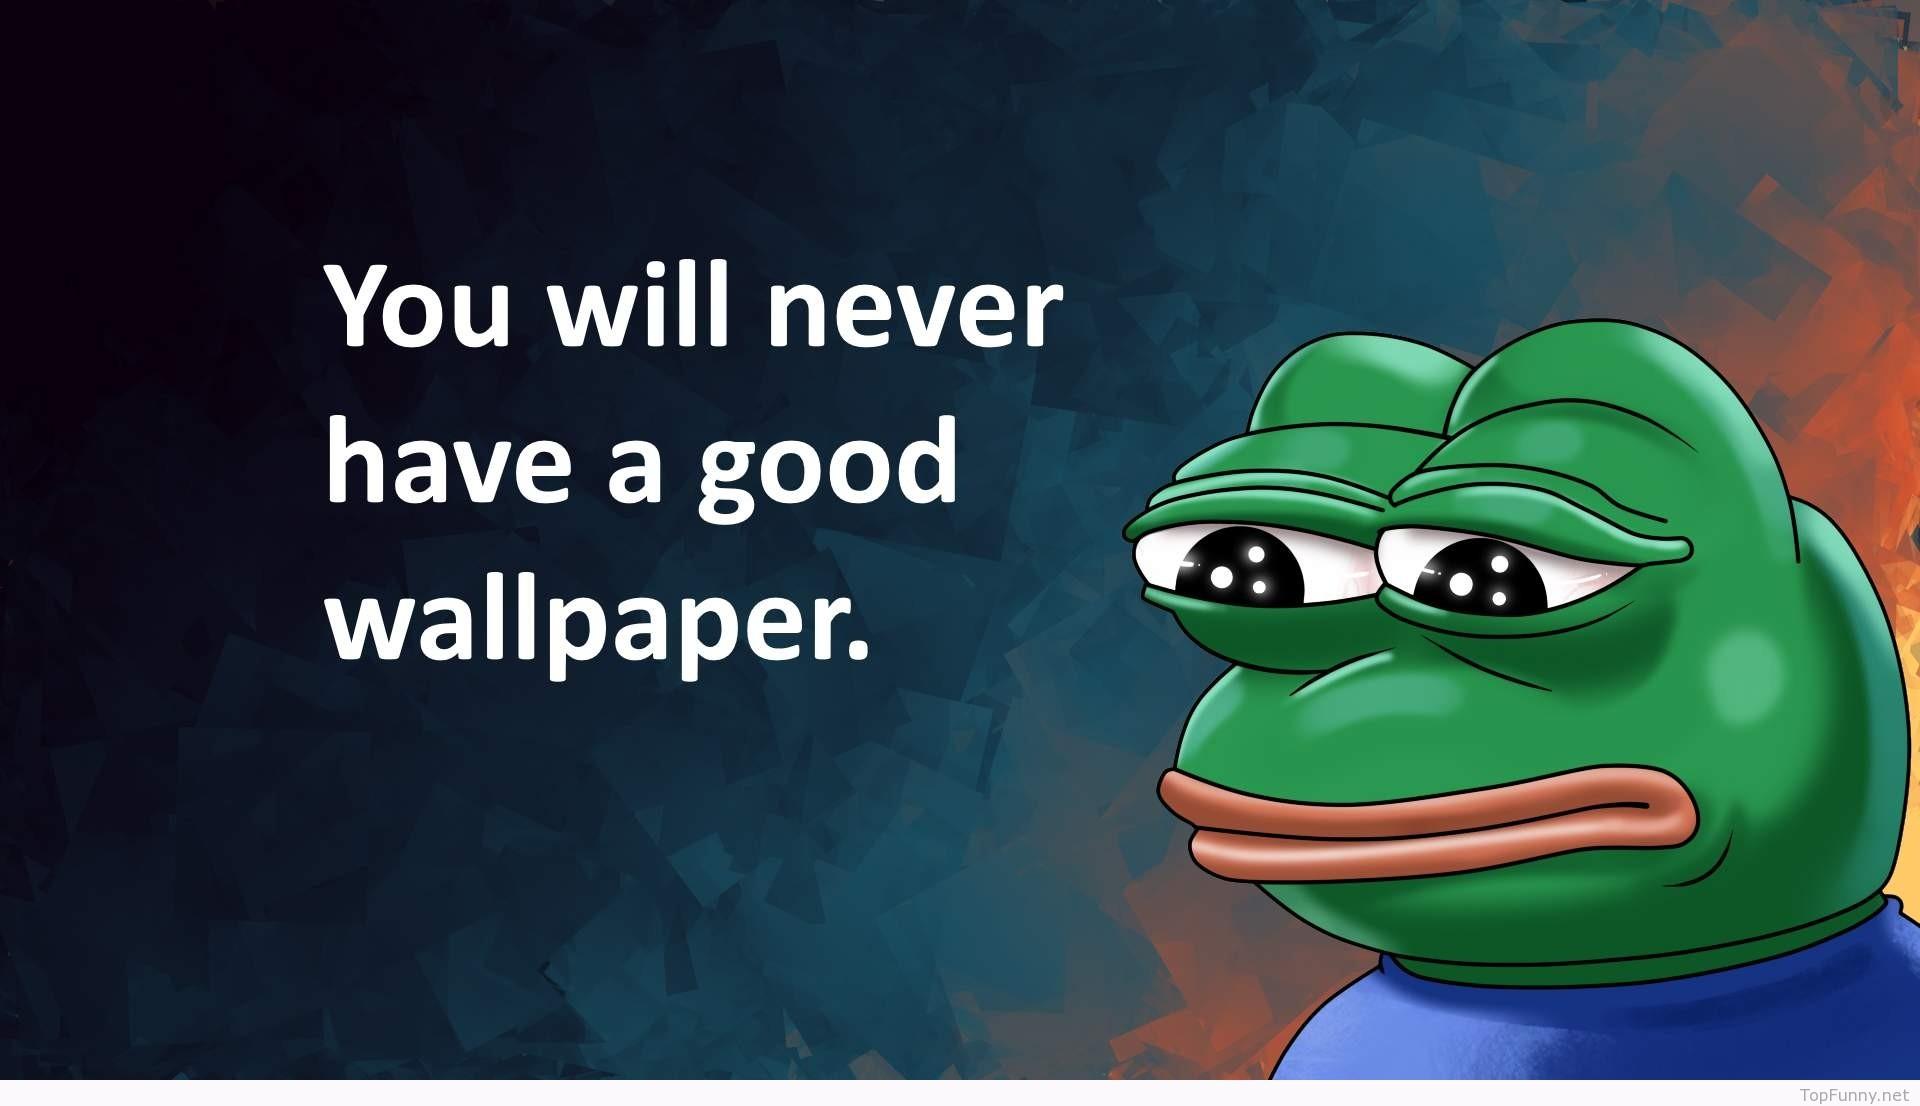 Pepe Meme Wallpaper